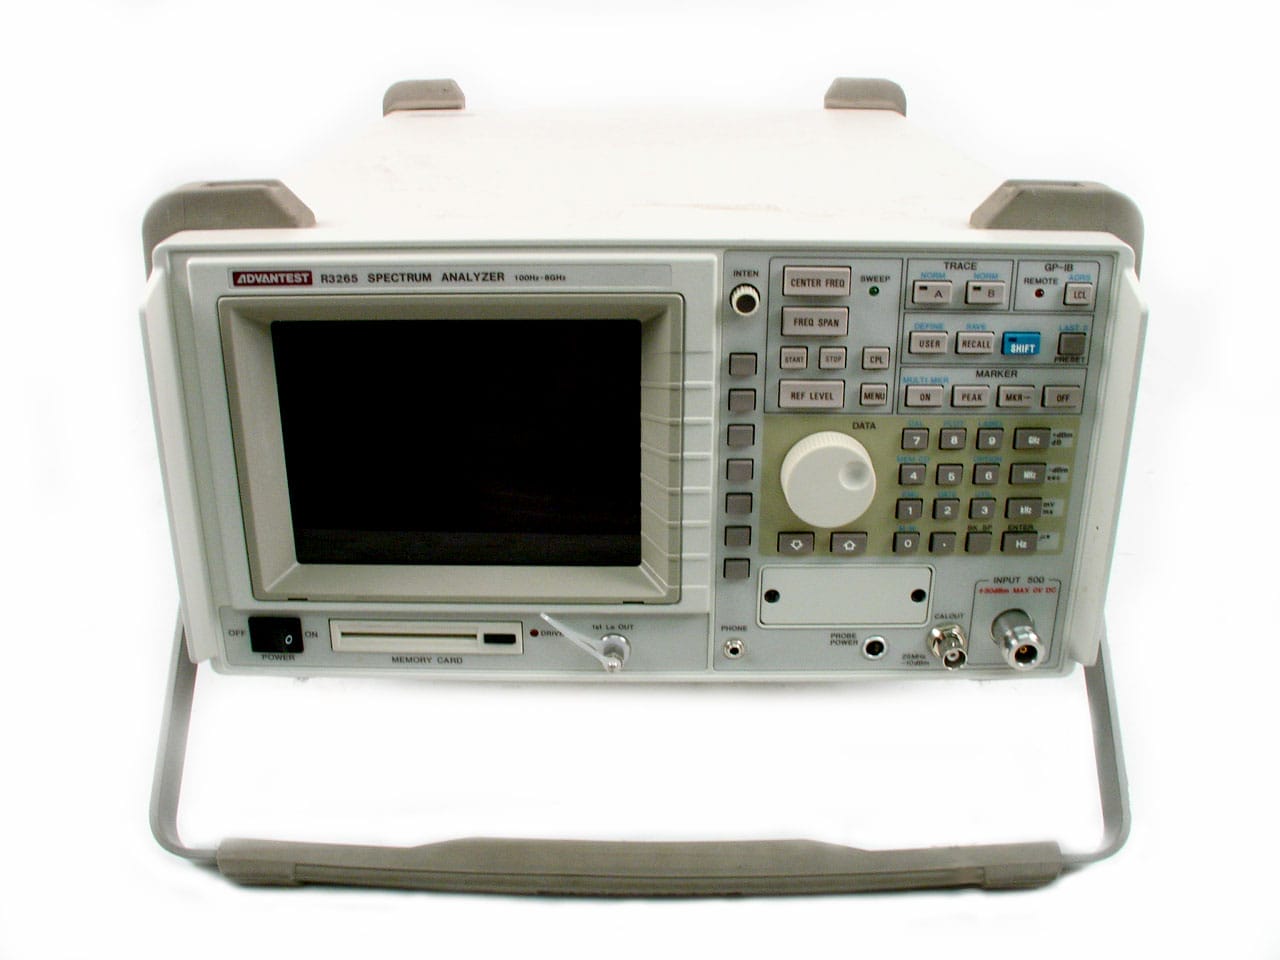 Advantest R3265 Spectrum Analyzer - 100Hz-8GHz